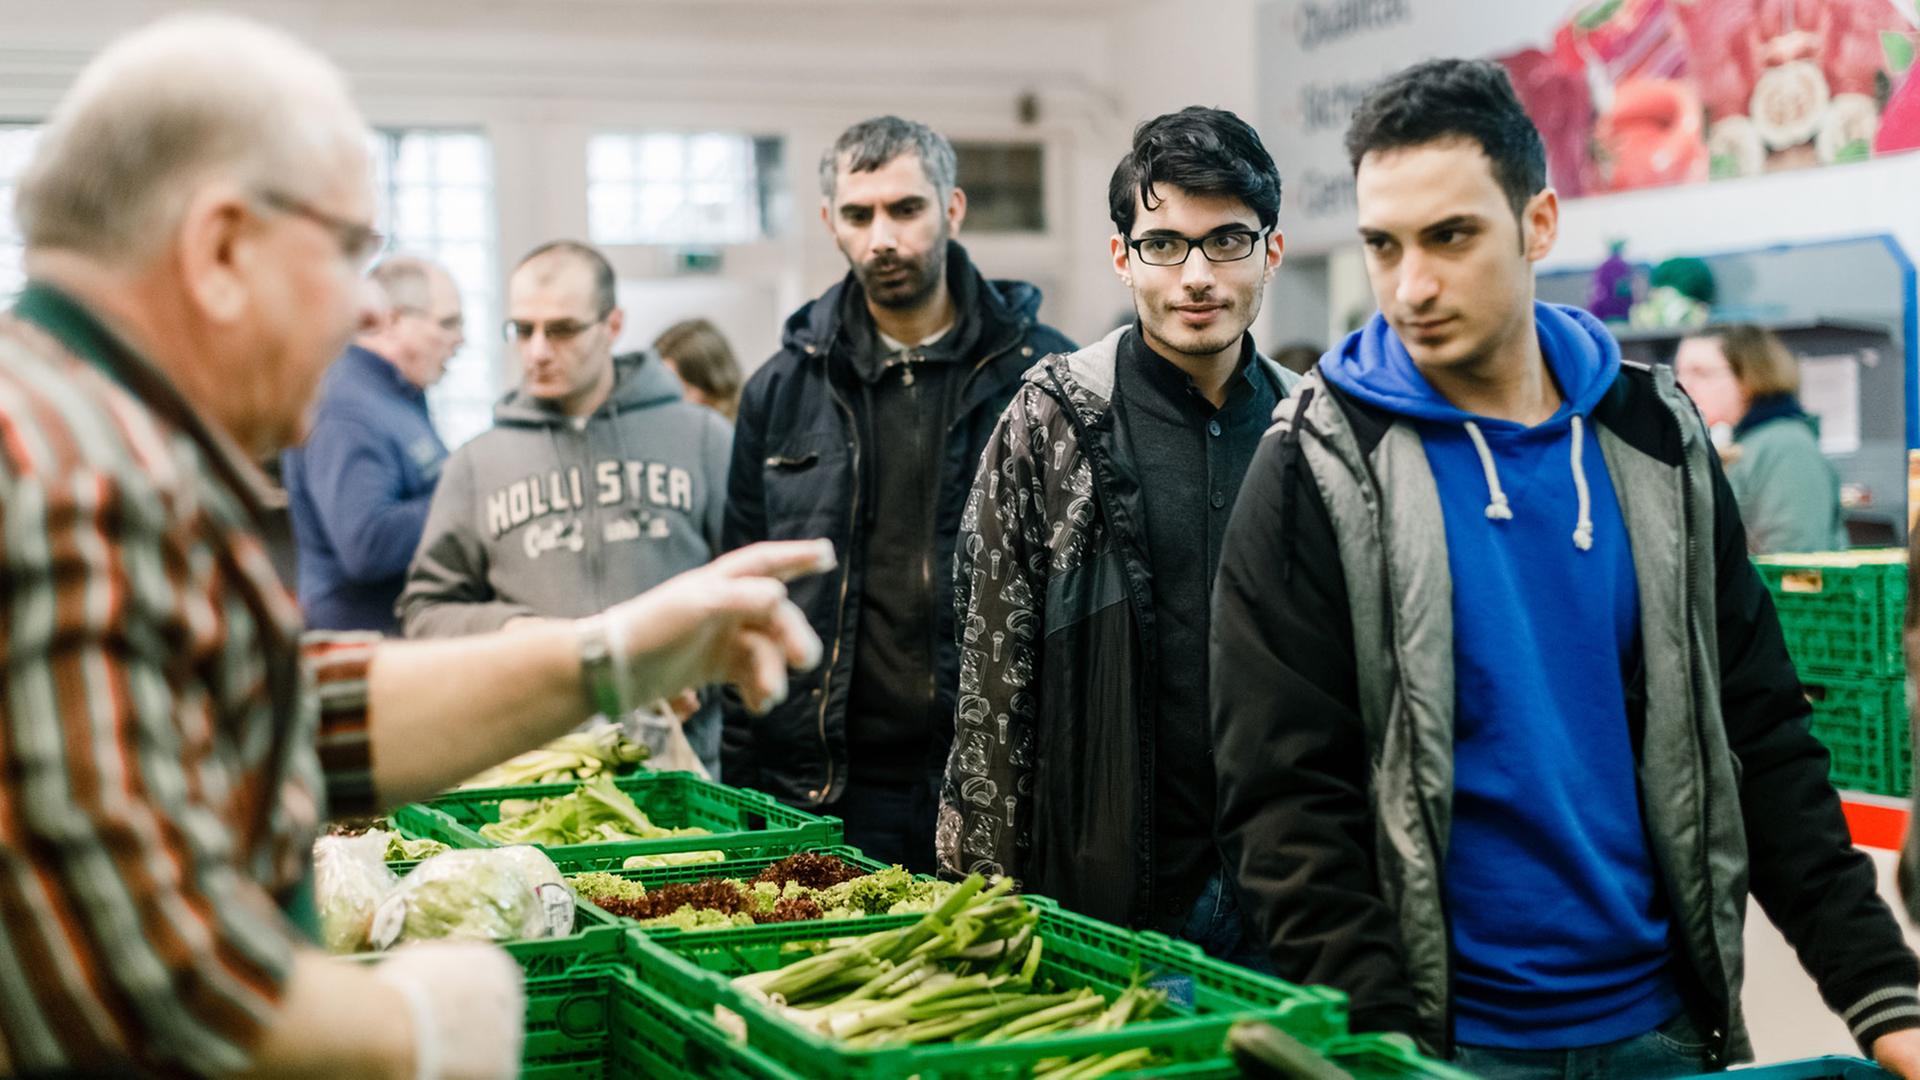 Ein ehrenamtlicher Mitarbeiter gibt am 30.12.2015 in Flensburg (Schleswig-Holstein) im Verteilraum der Flenburger Tafel Lebensmittel unter anderem an syrische Asylbewerber aus.